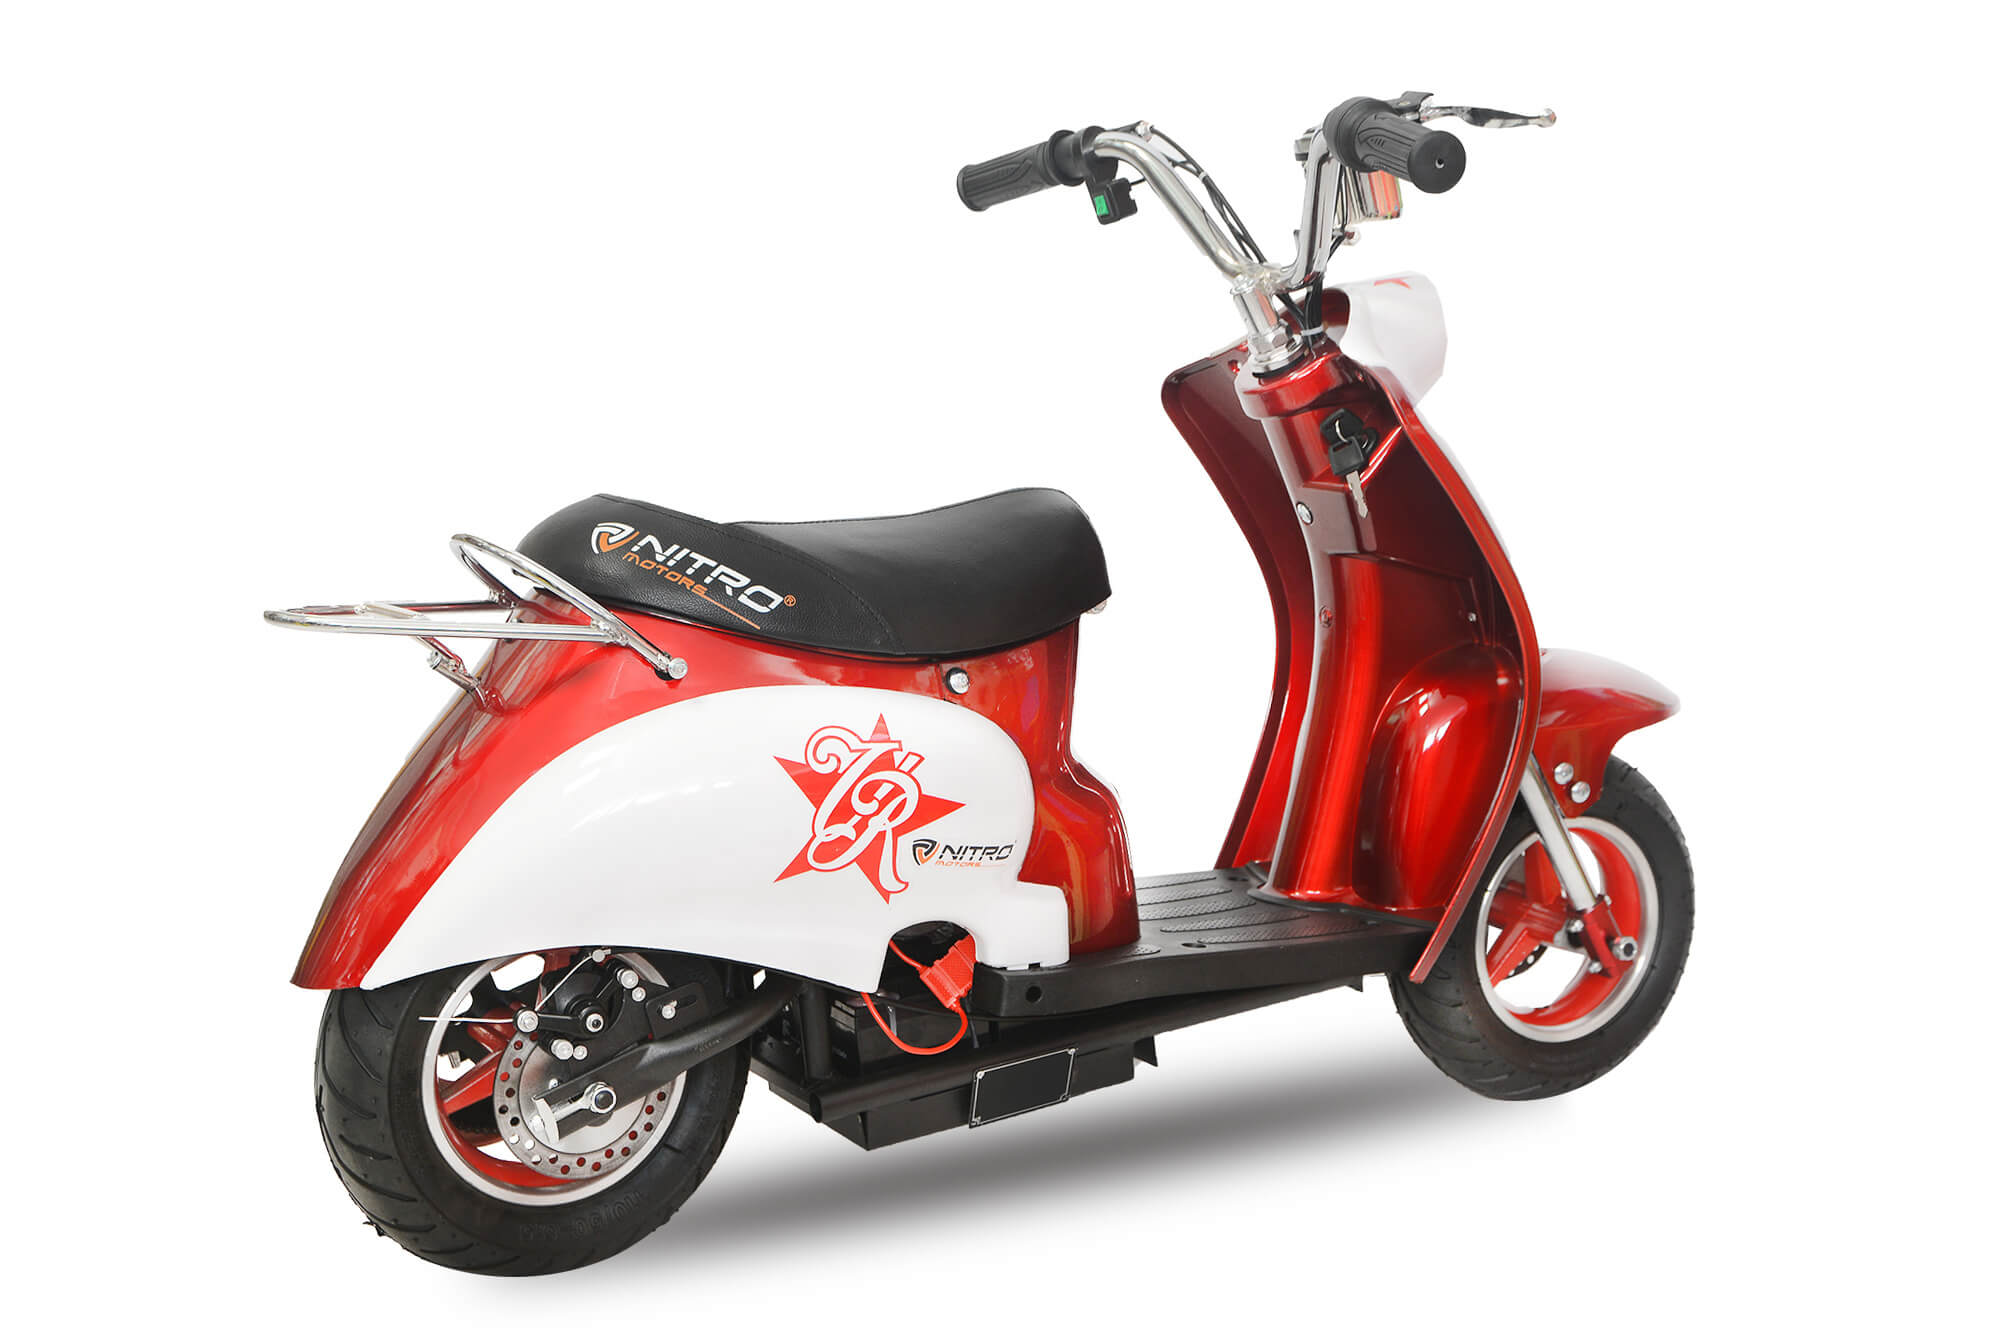 ShopbijStef - Mini scooter - Mini scooter électrique - Vespa